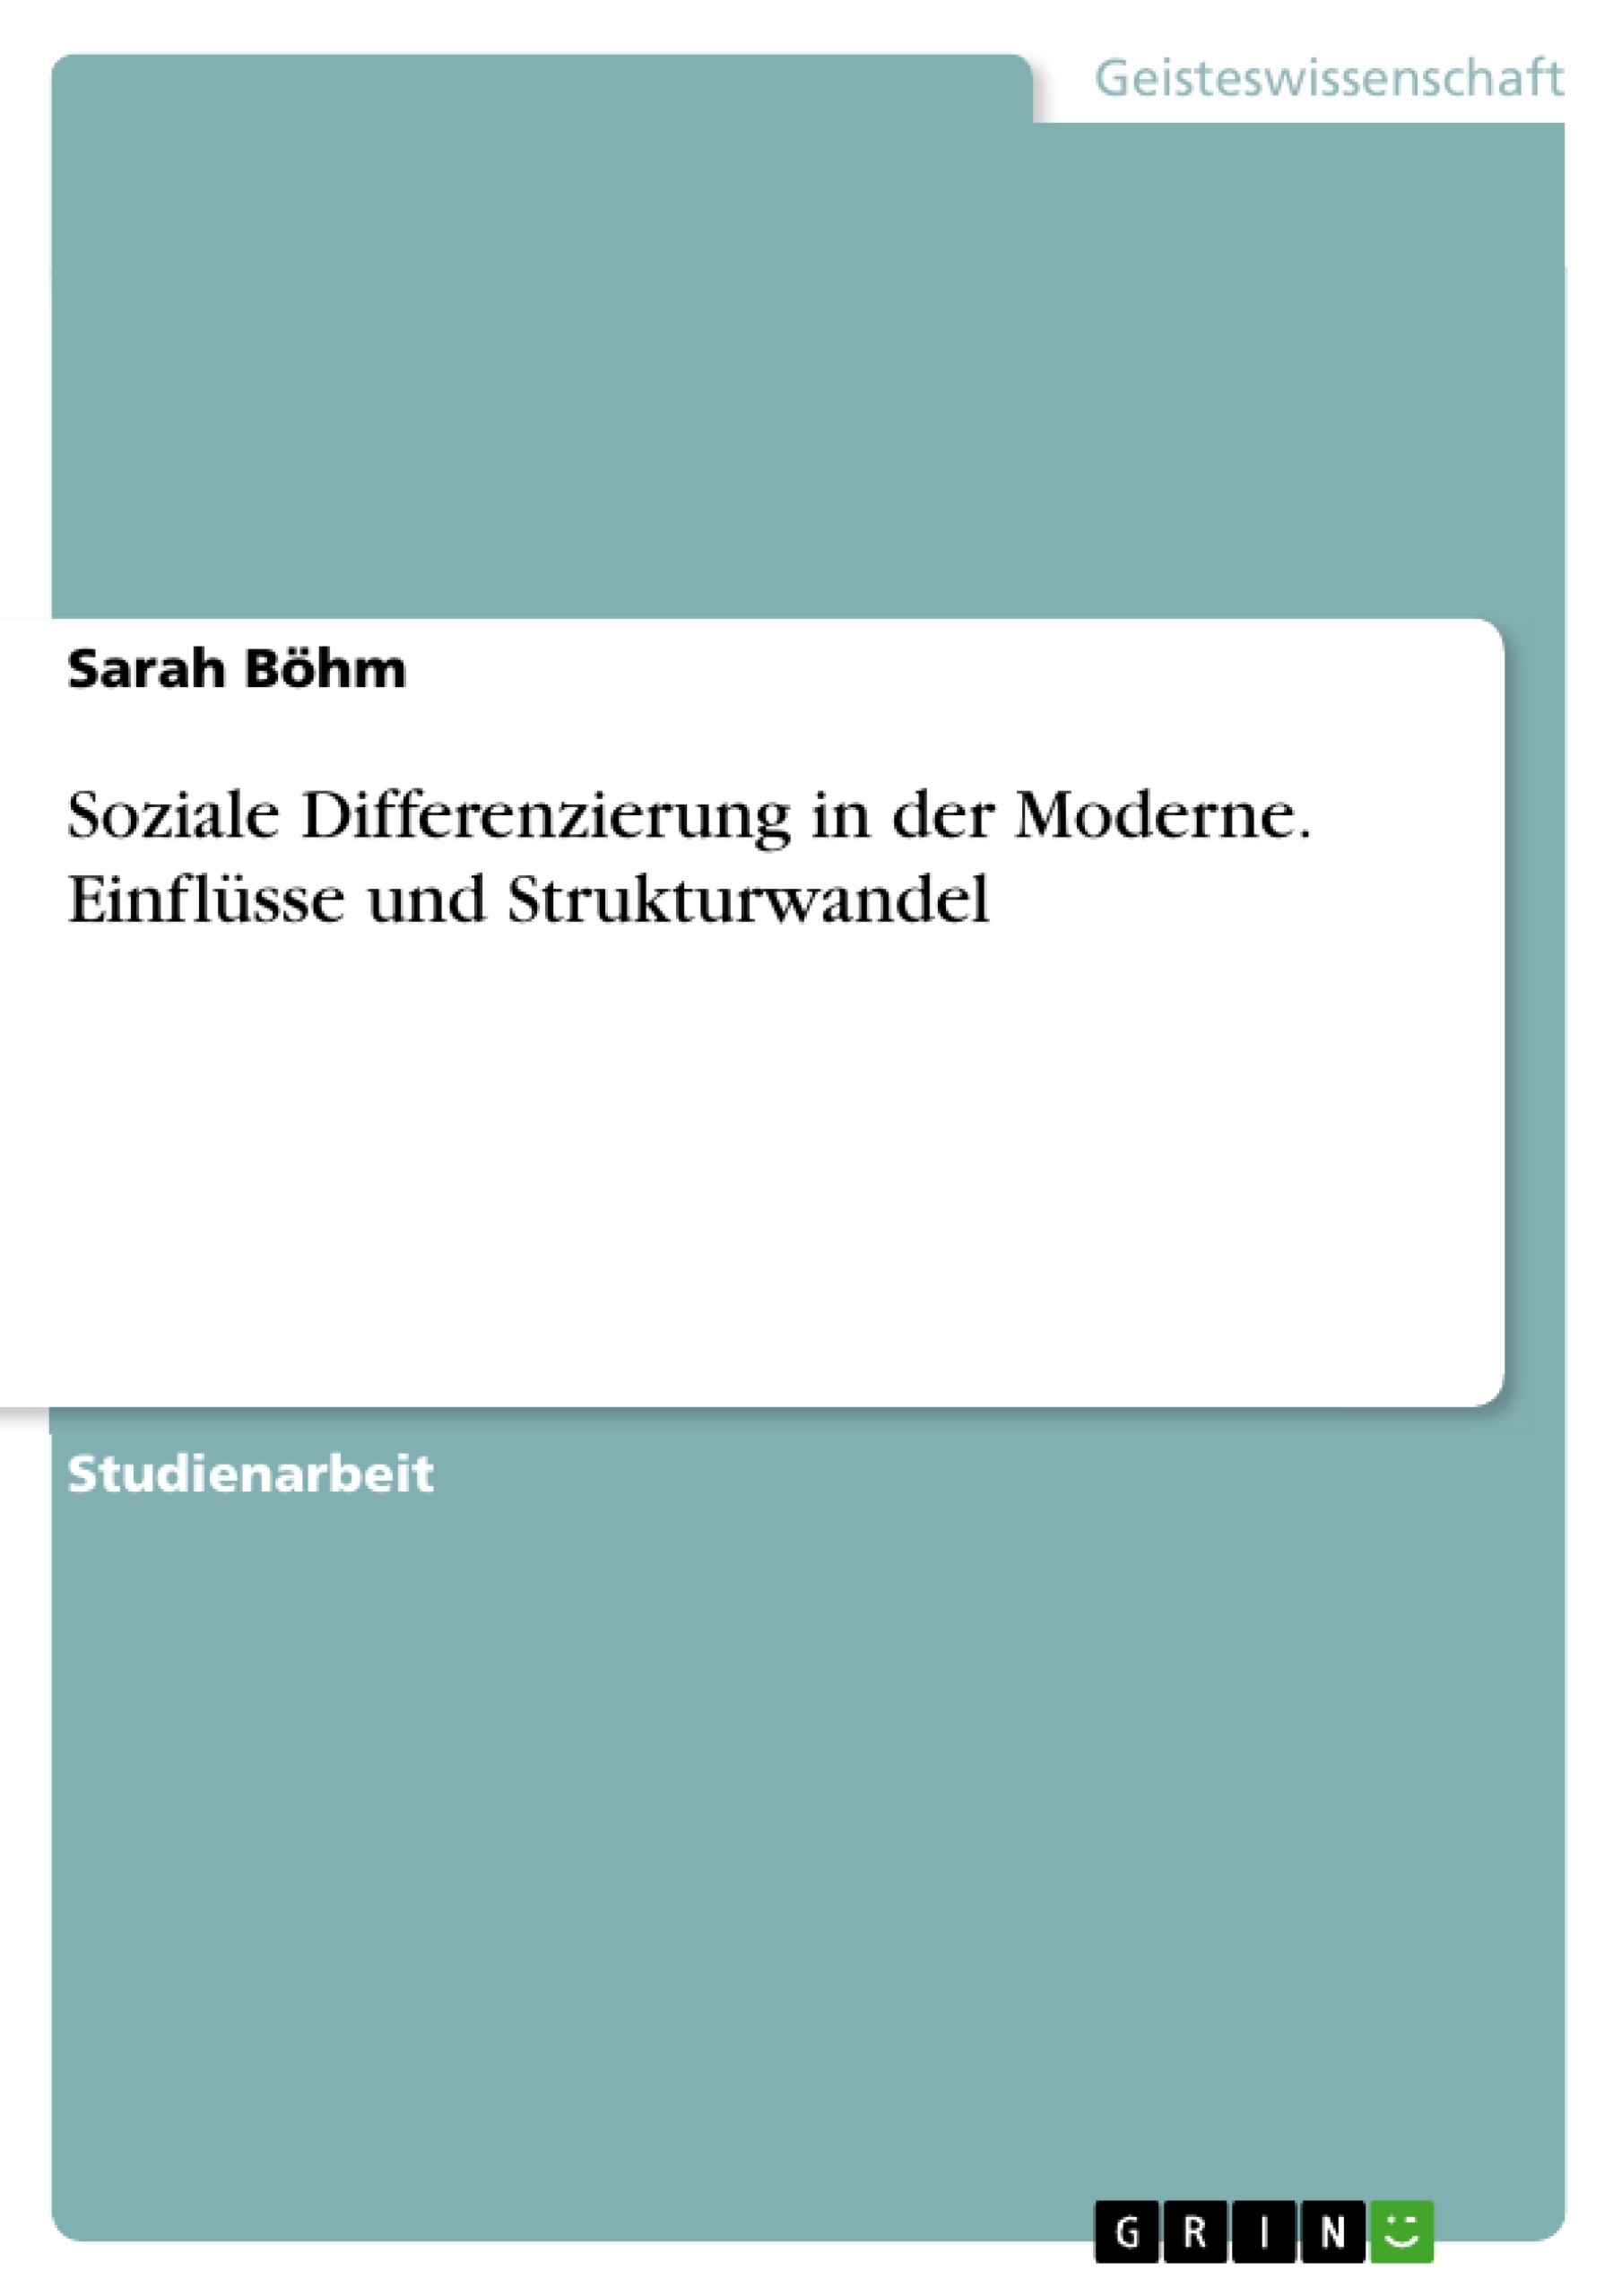 Title: Soziale Differenzierung in der Moderne. Einflüsse und Strukturwandel